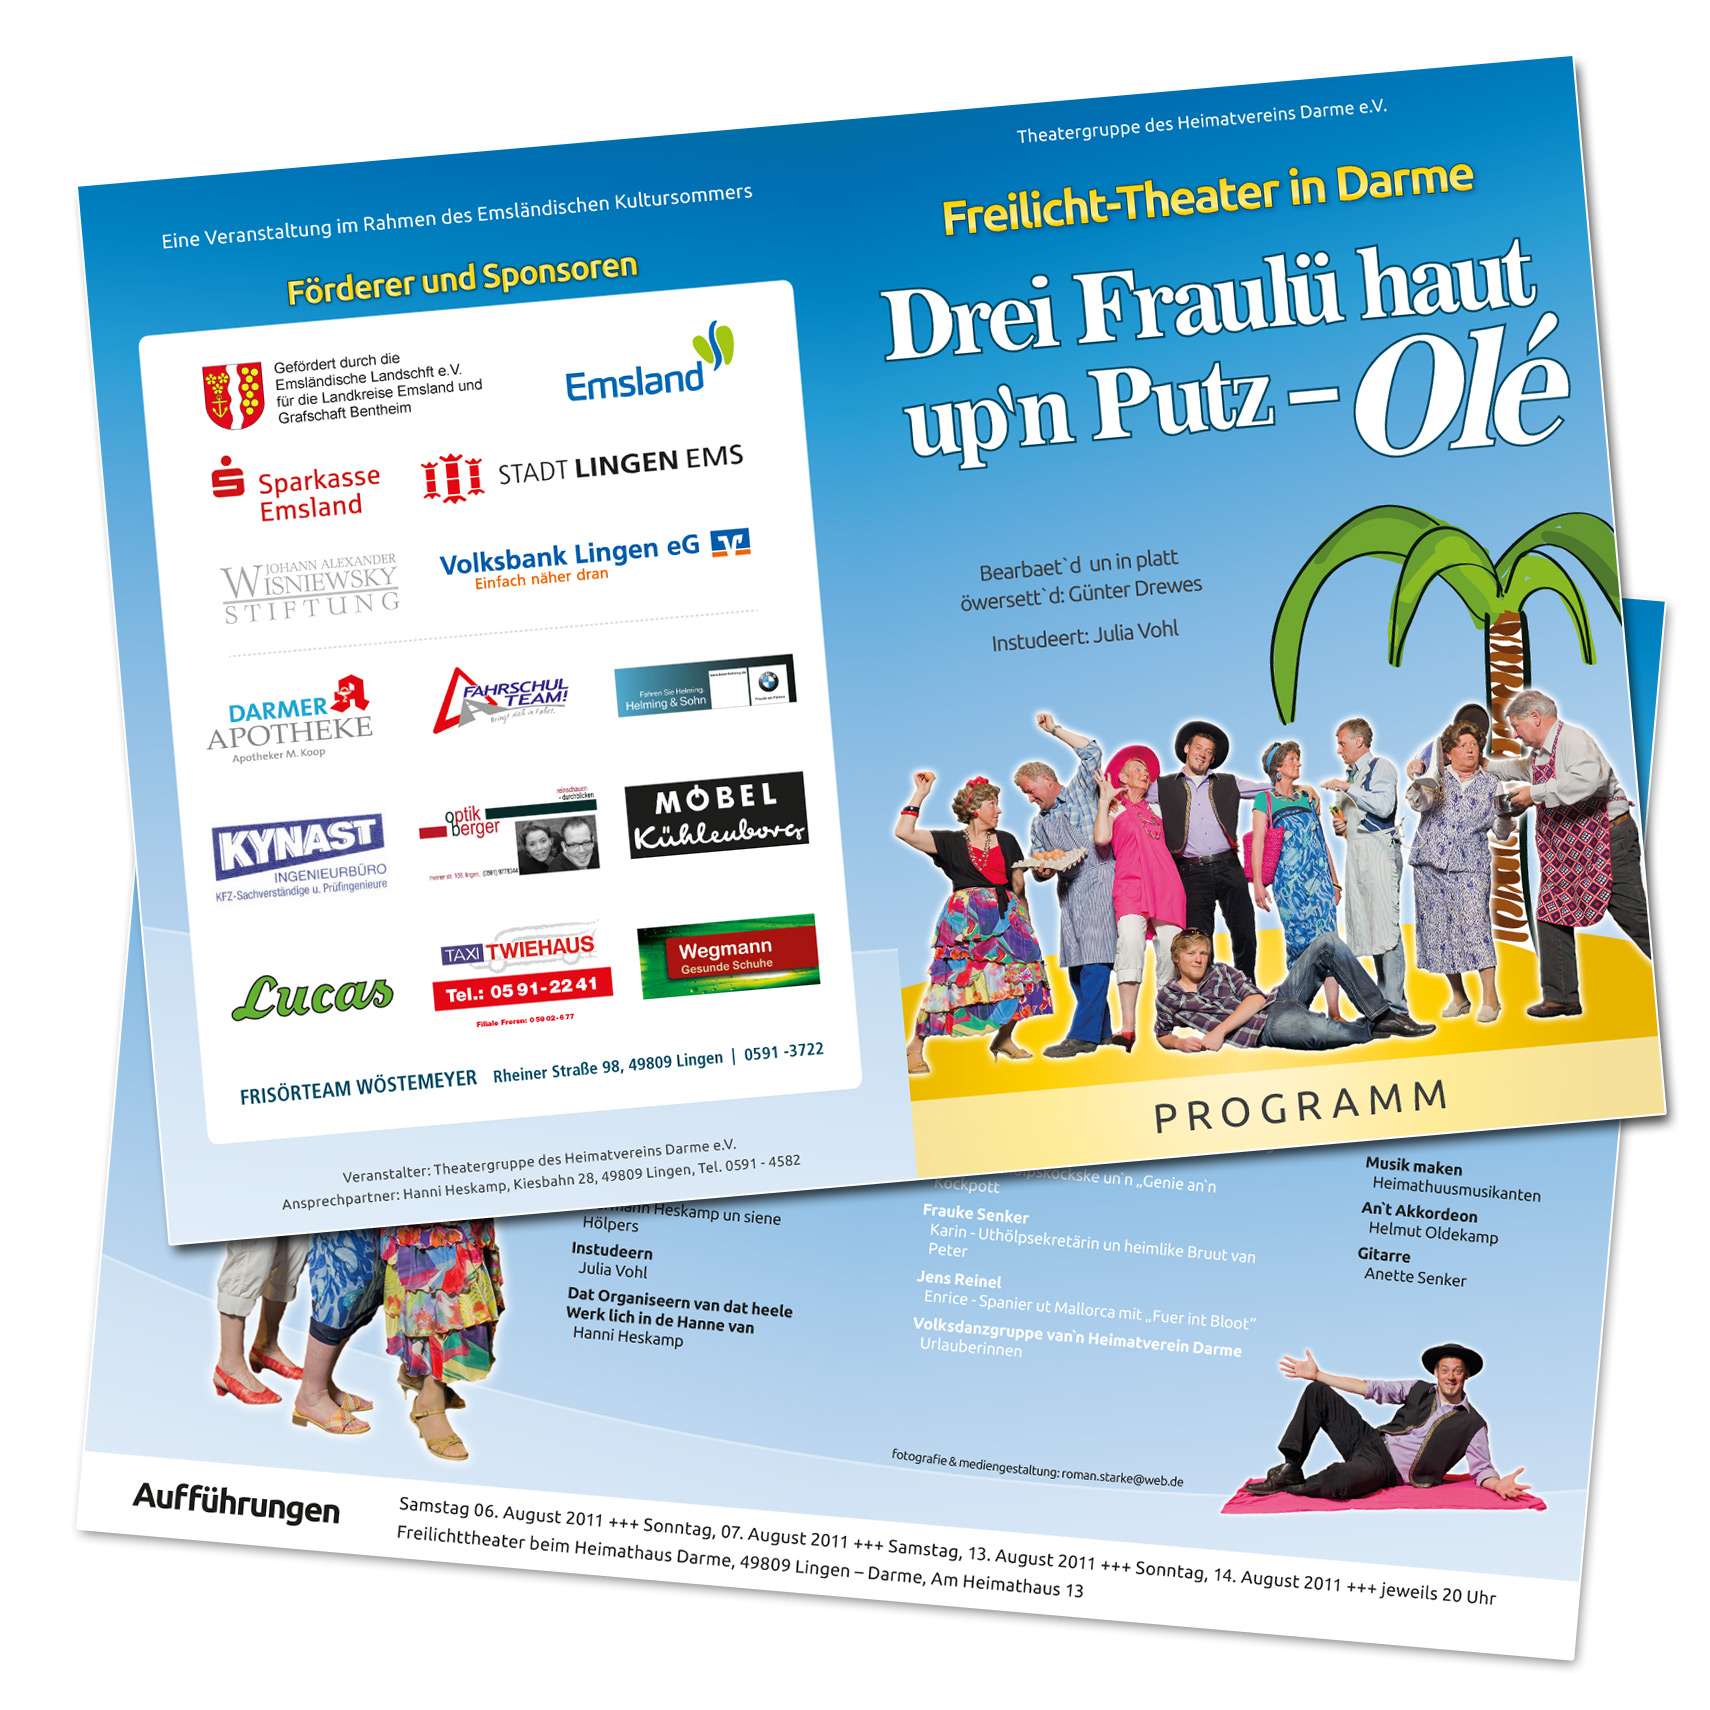 Flyer Folder Theaterstuck Drei Fraulu Haut Up N Putz Ole Programmheft Weltgestalten Webdesign Mediengestaltung Fotografie Kommunikation